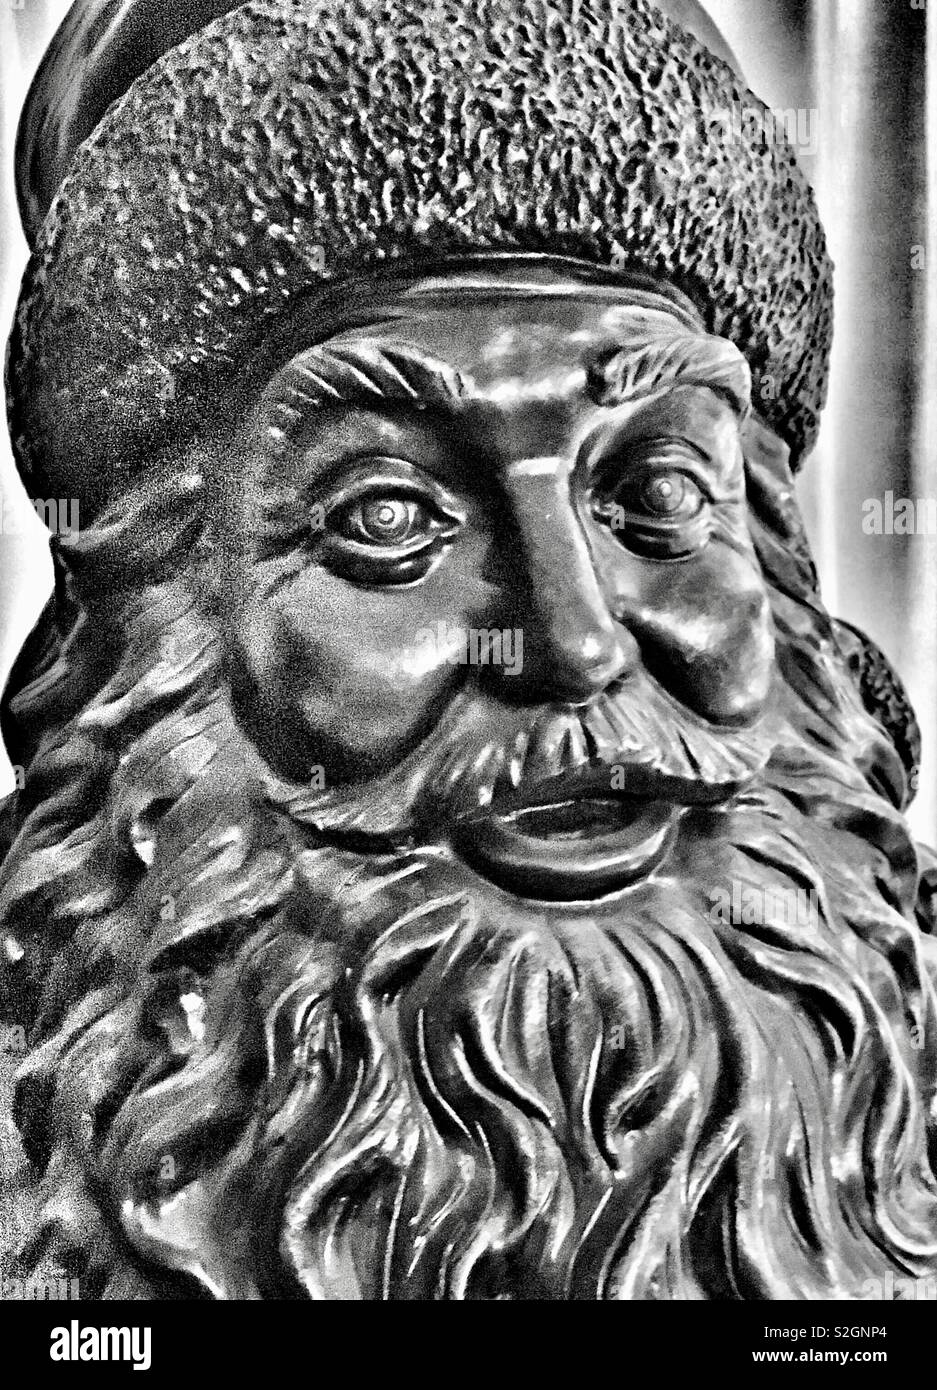 Primer plano de bronce creepy Santa estatua con ojos muy abiertos y sombrero de piel en blanco y negro Foto de stock